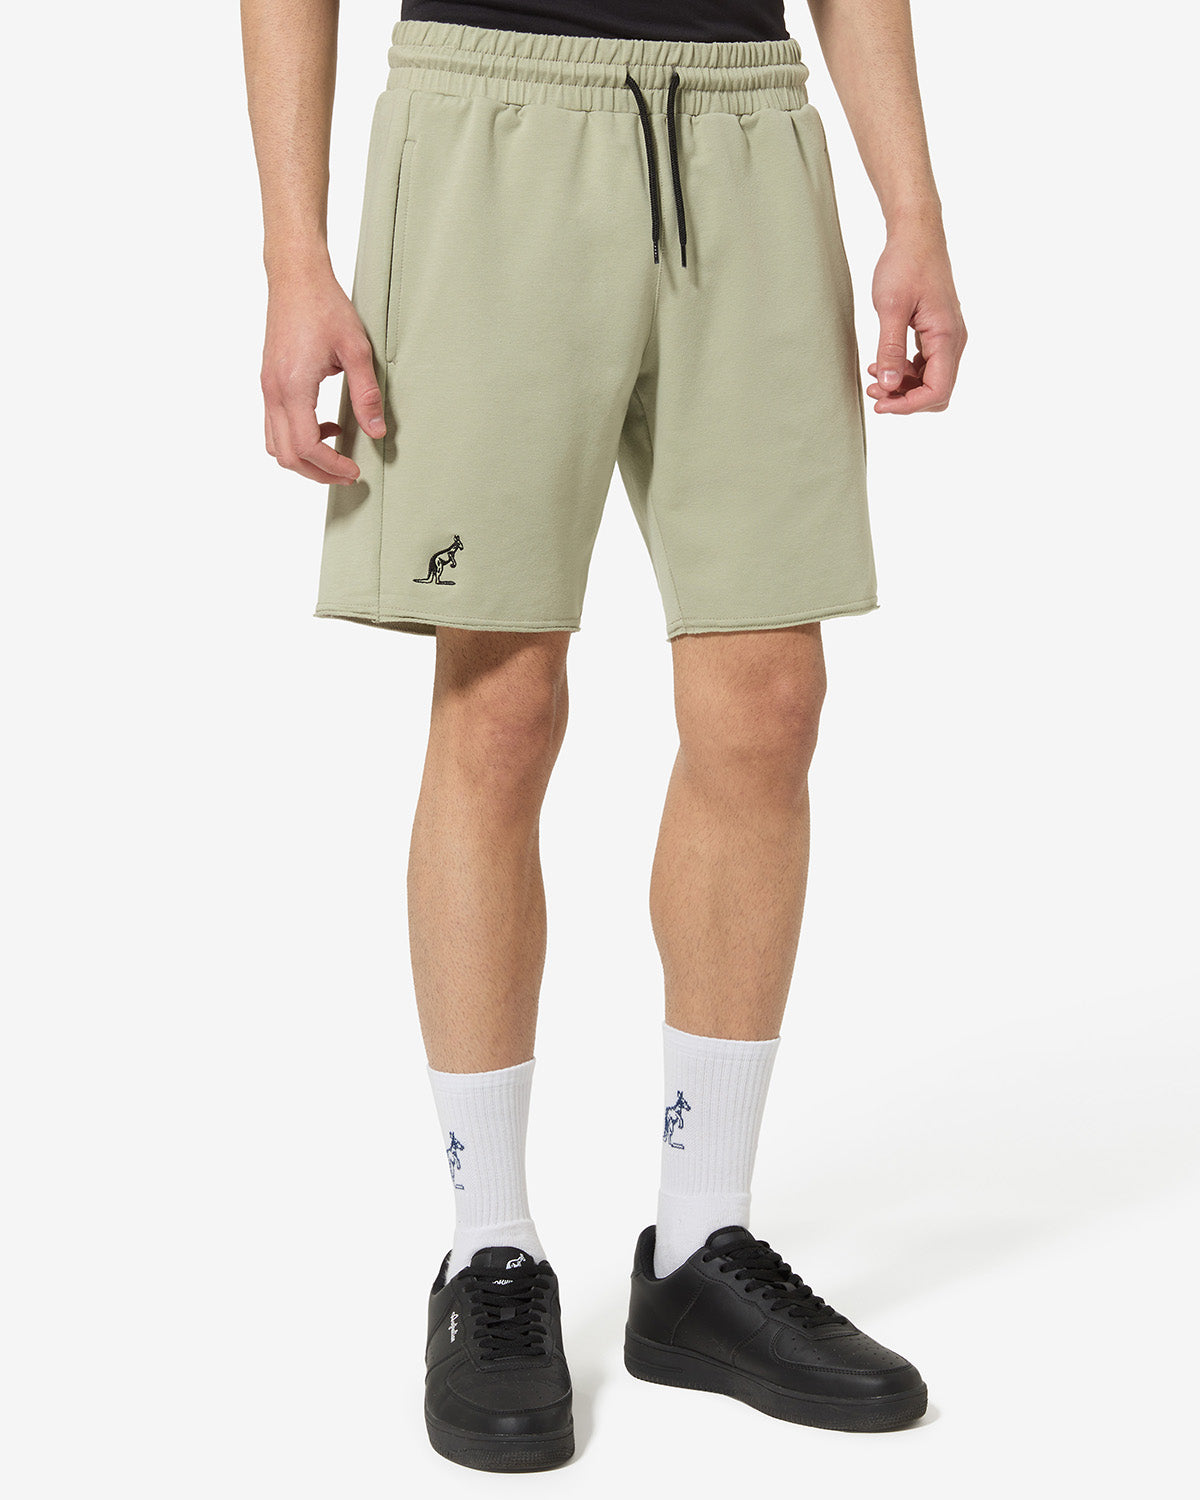 Essential Short: Australian Sportswear